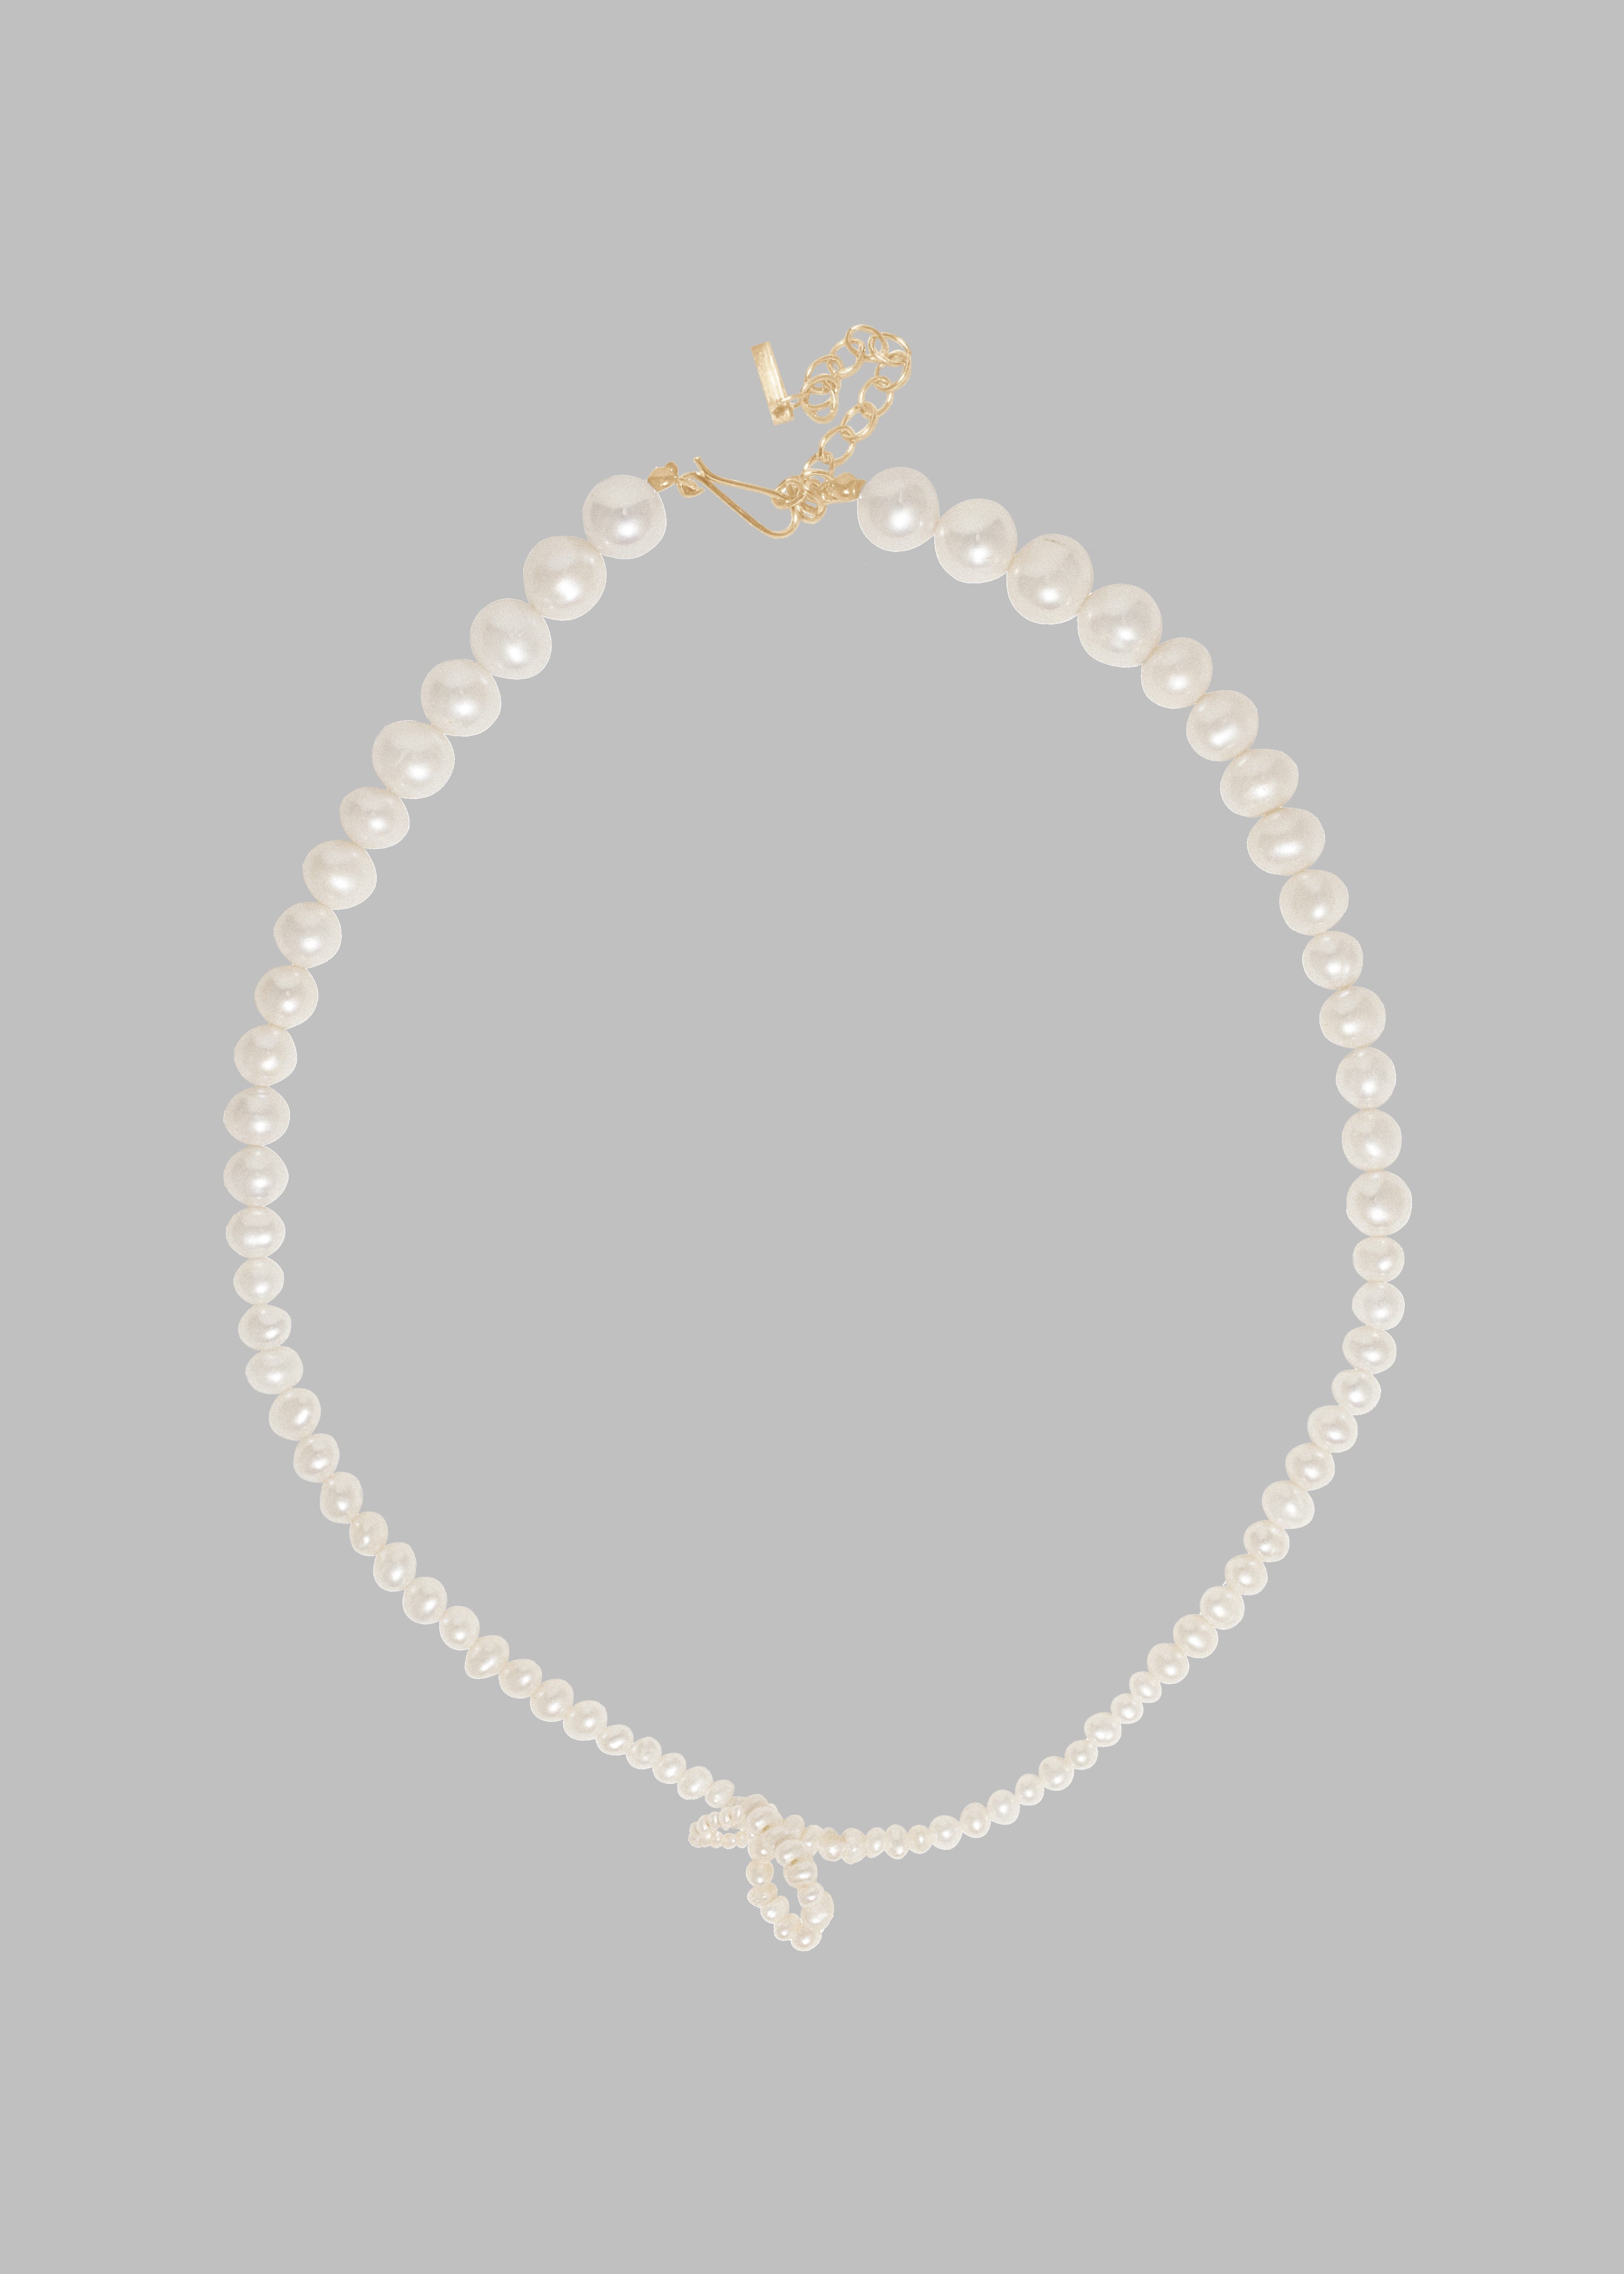 Completedworks Loop-The-Loop Necklace - Pearl/Gold Vermeil - 2